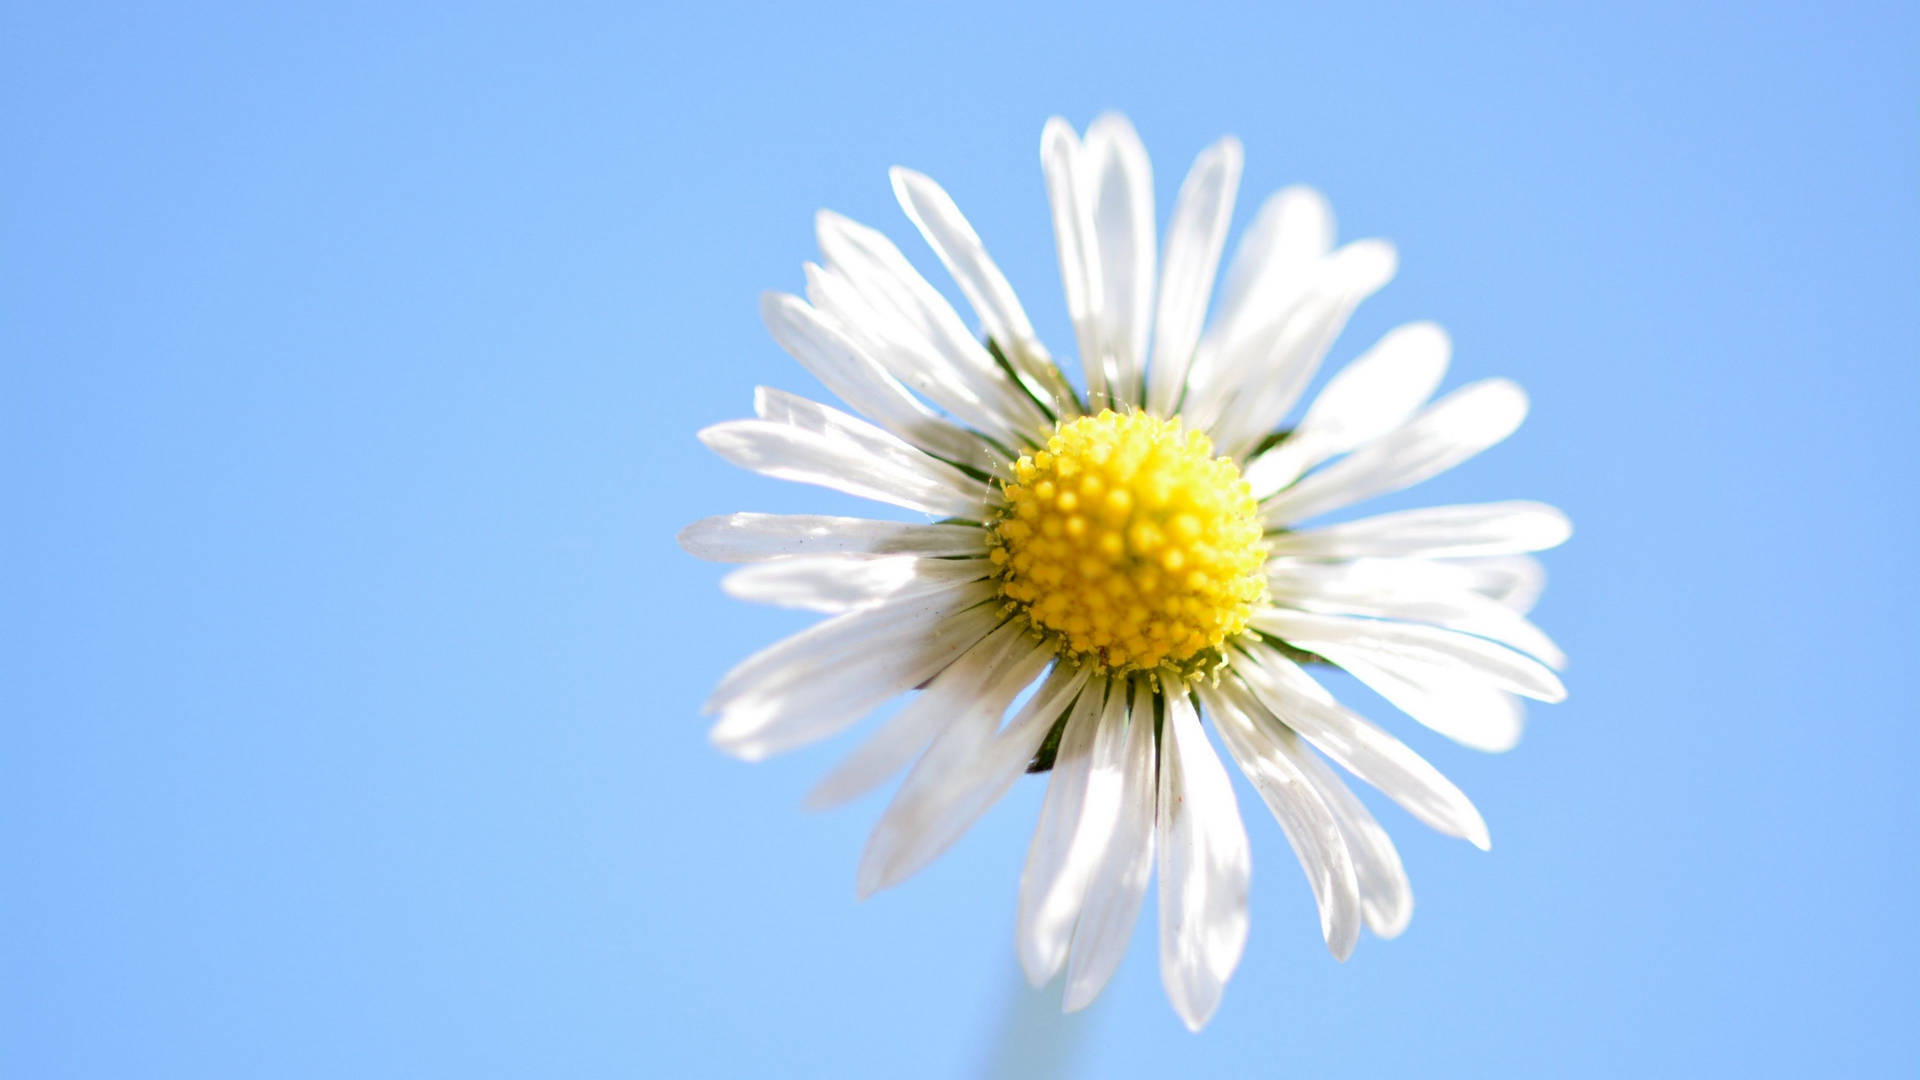 Daisy Flower Against Blue Sky 4k Background